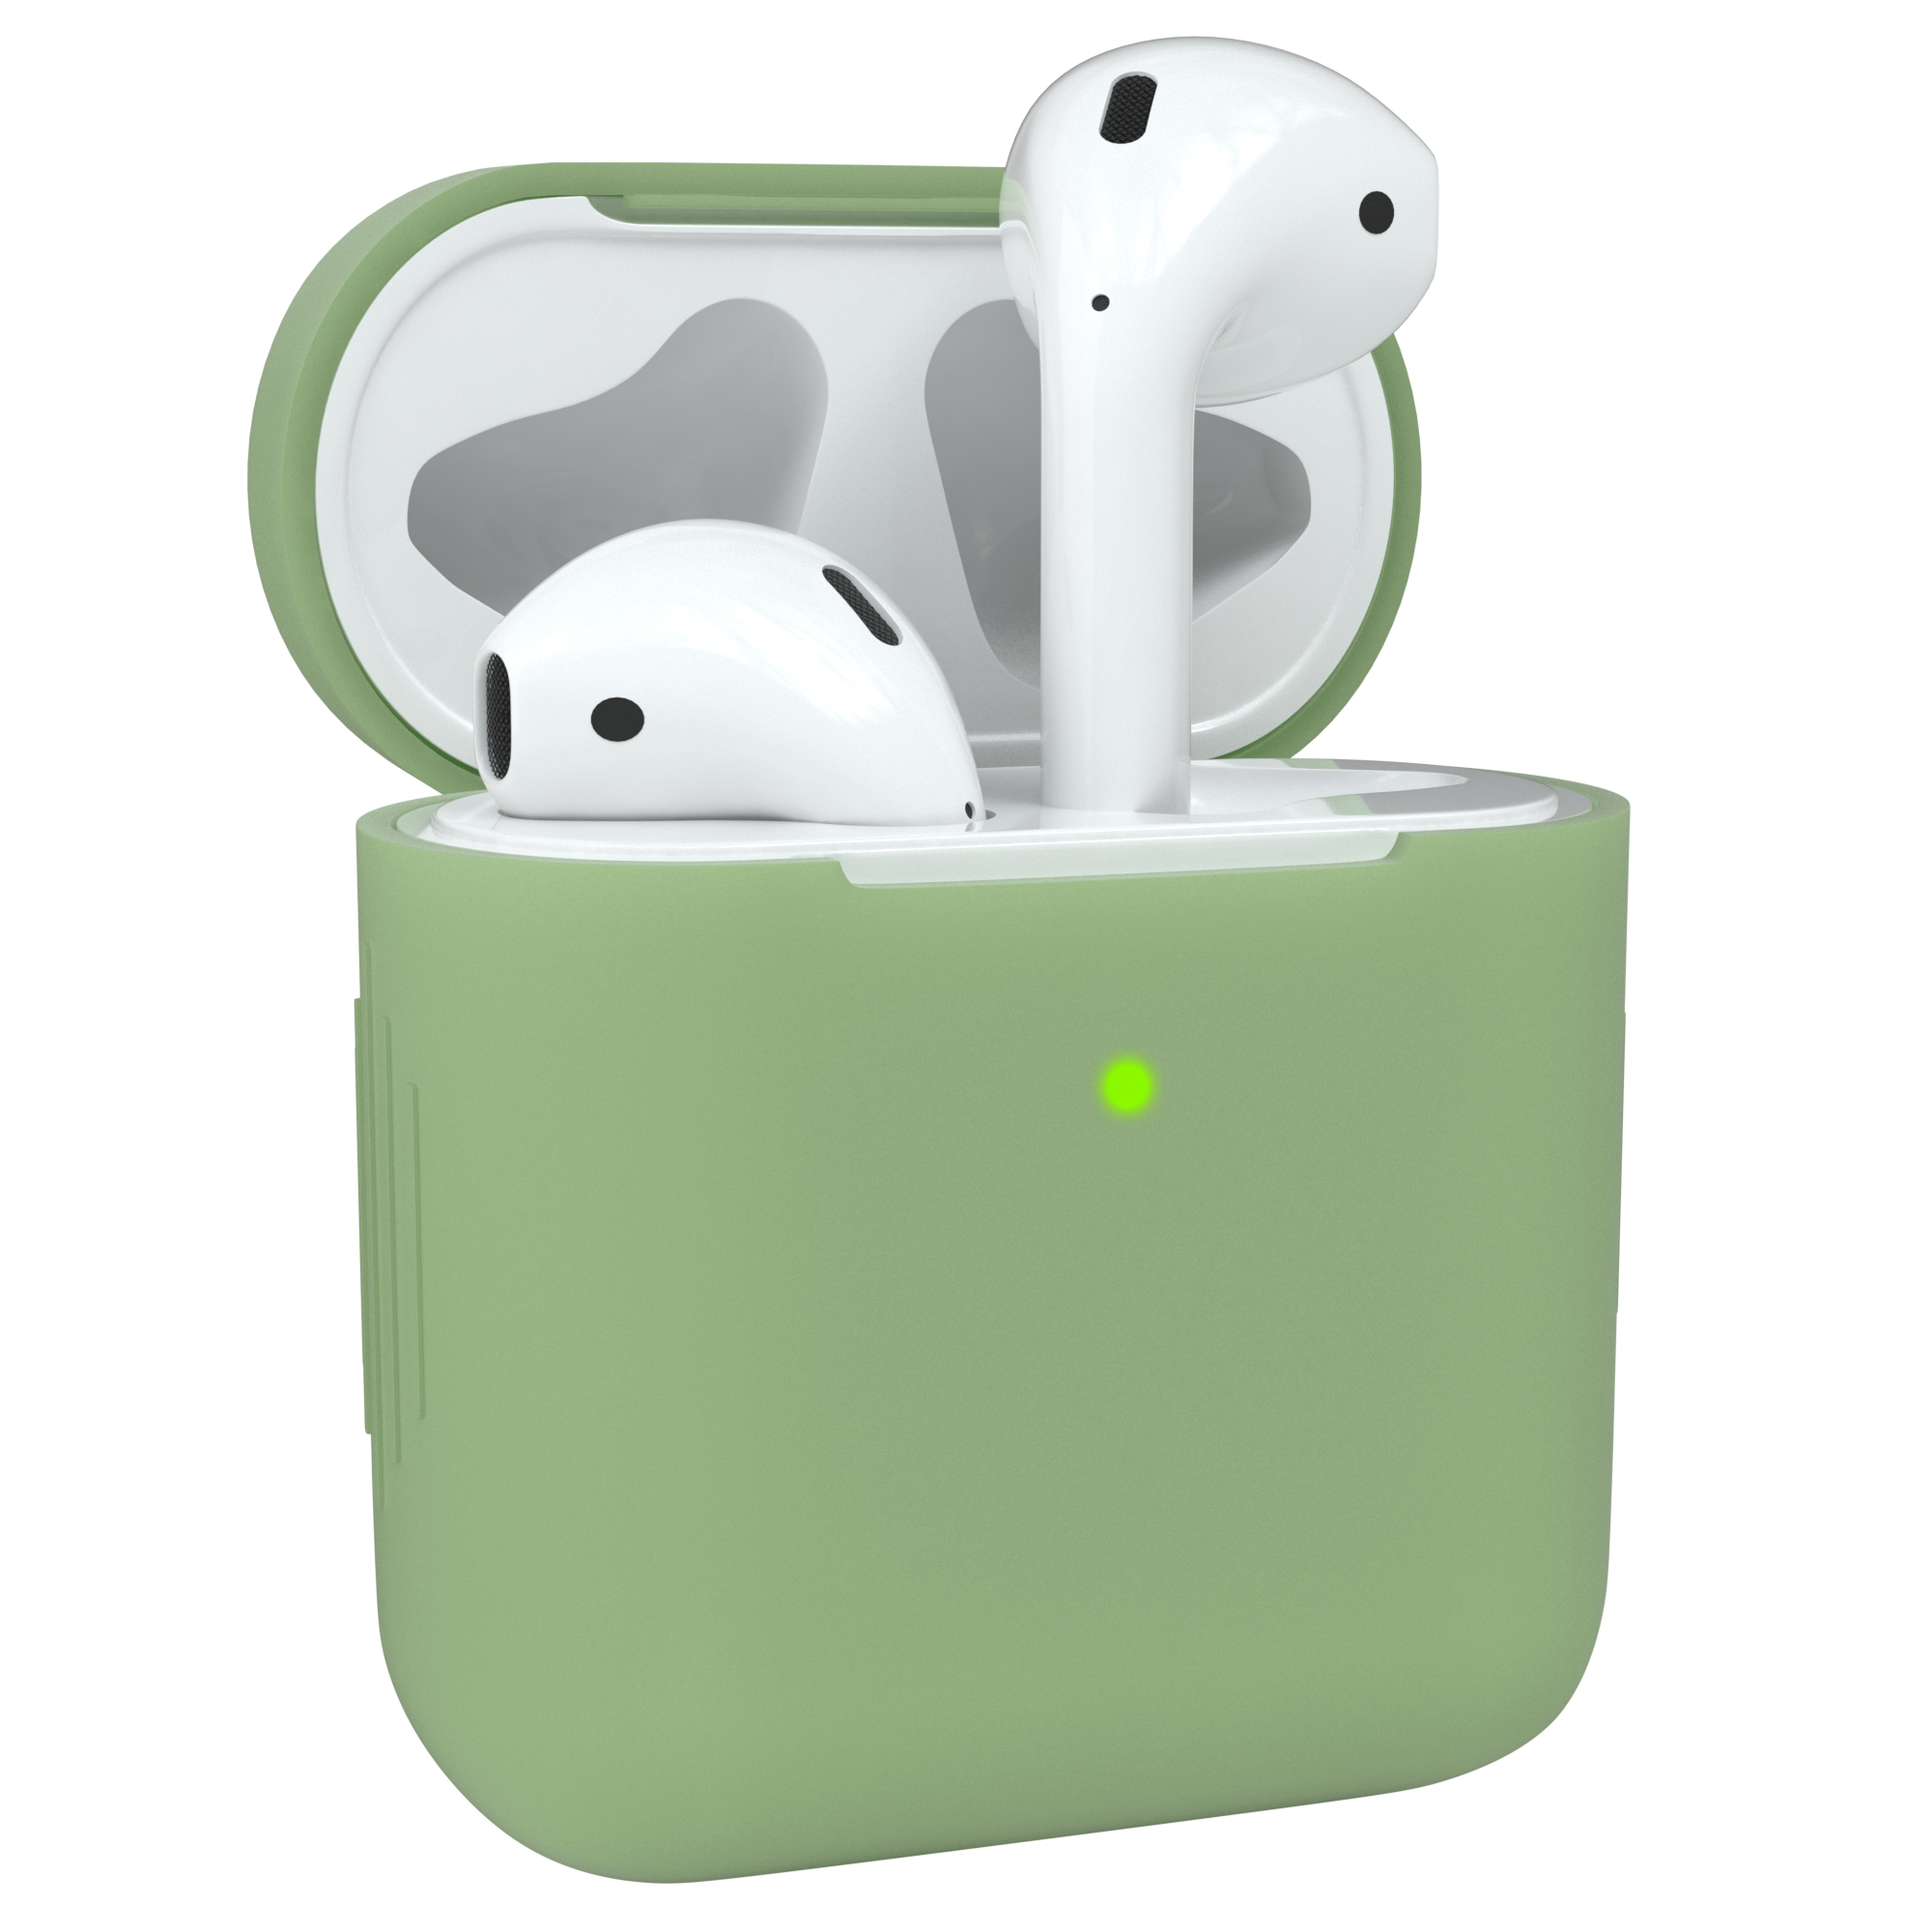 Olive für: passend Schutzhülle Sleeve Silikon Apple CASE AirPods Case Grün EAZY